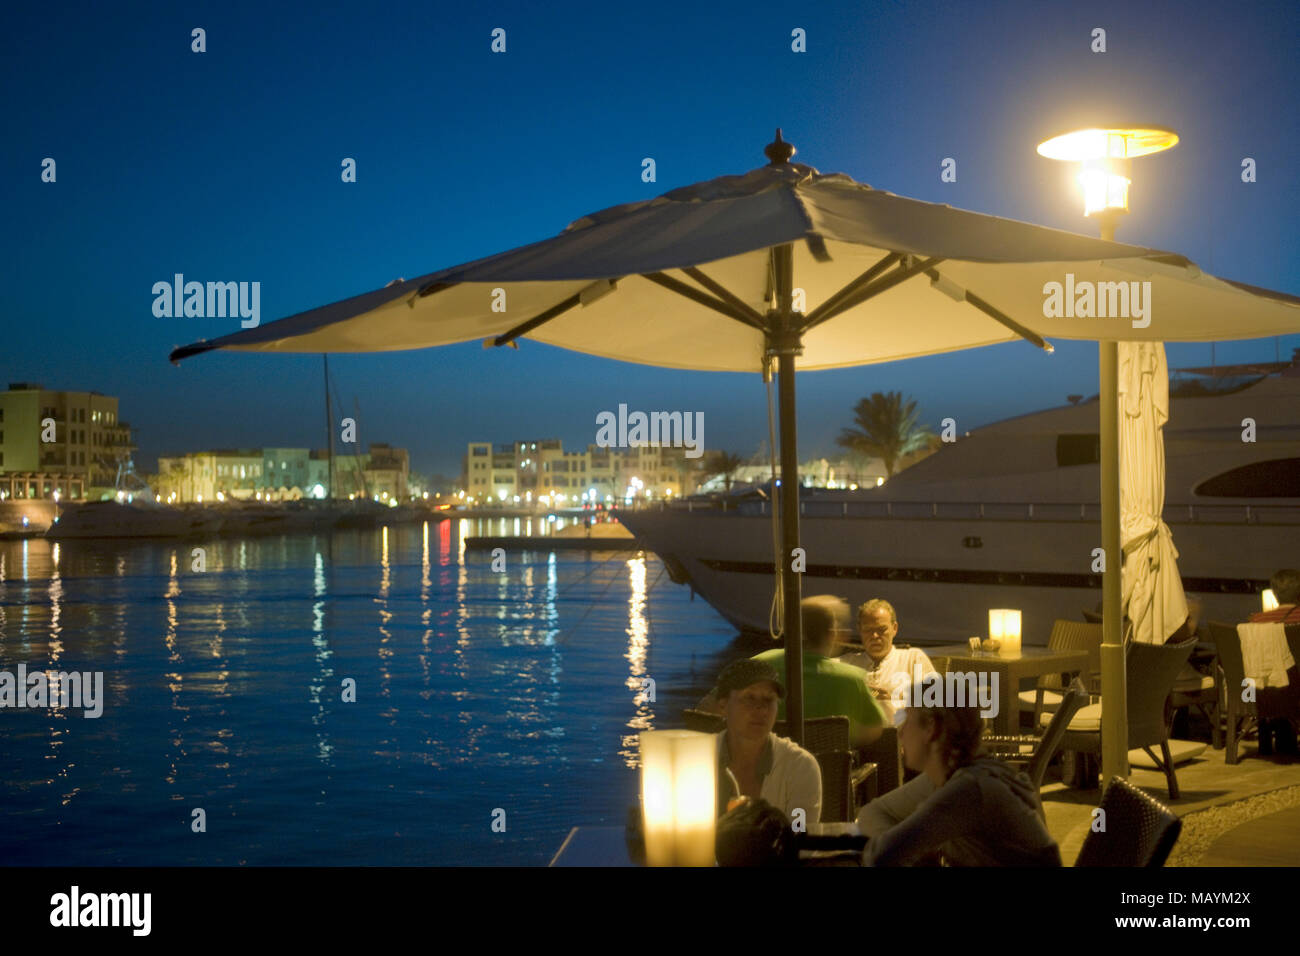 Ägypten, Kafr el Gouna, 'Moods' Restaurant & Bar in der Marina Stockfoto